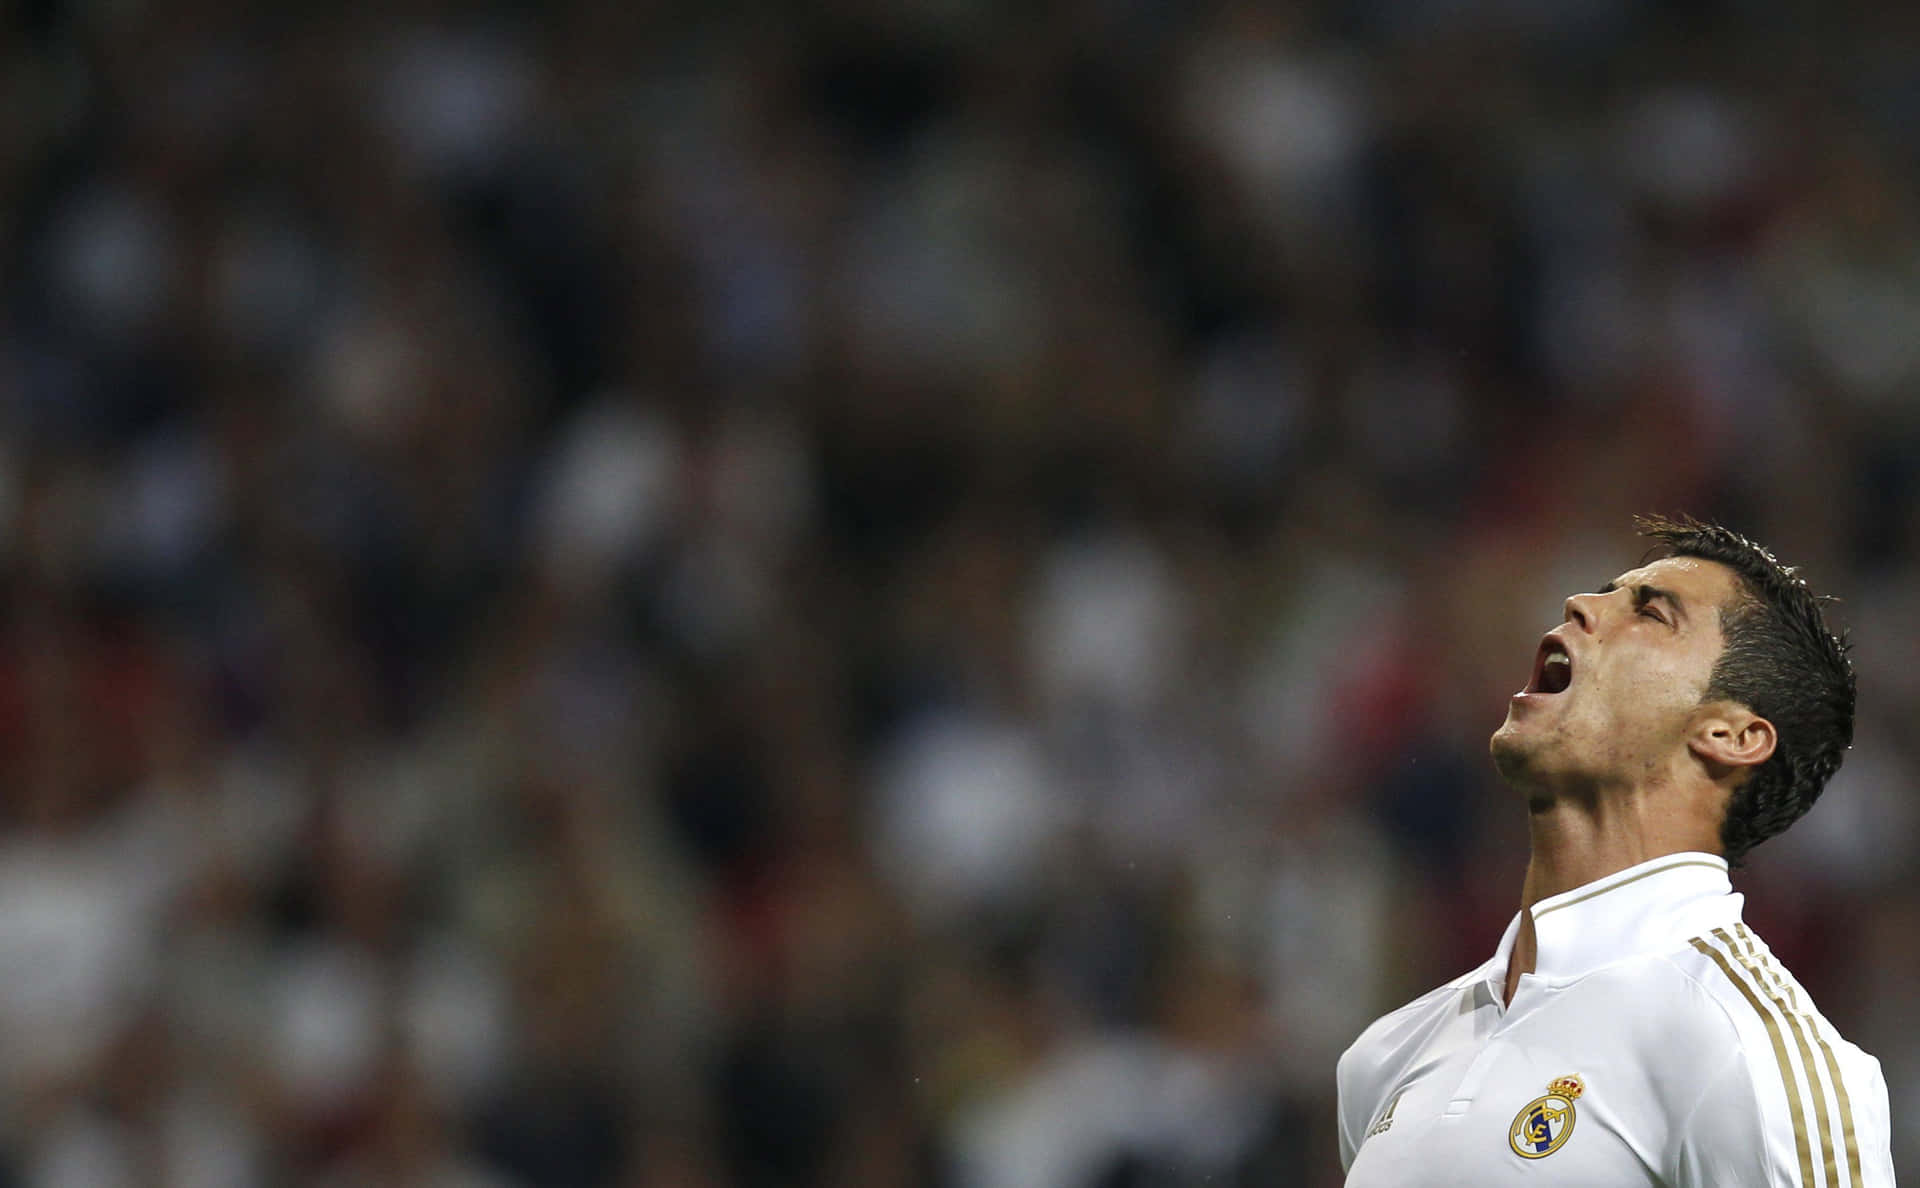 Derportugiesische Fußball-superstar Cristiano Ronaldo Präsentiert Seine Charakteristische Freistoßtechnik.